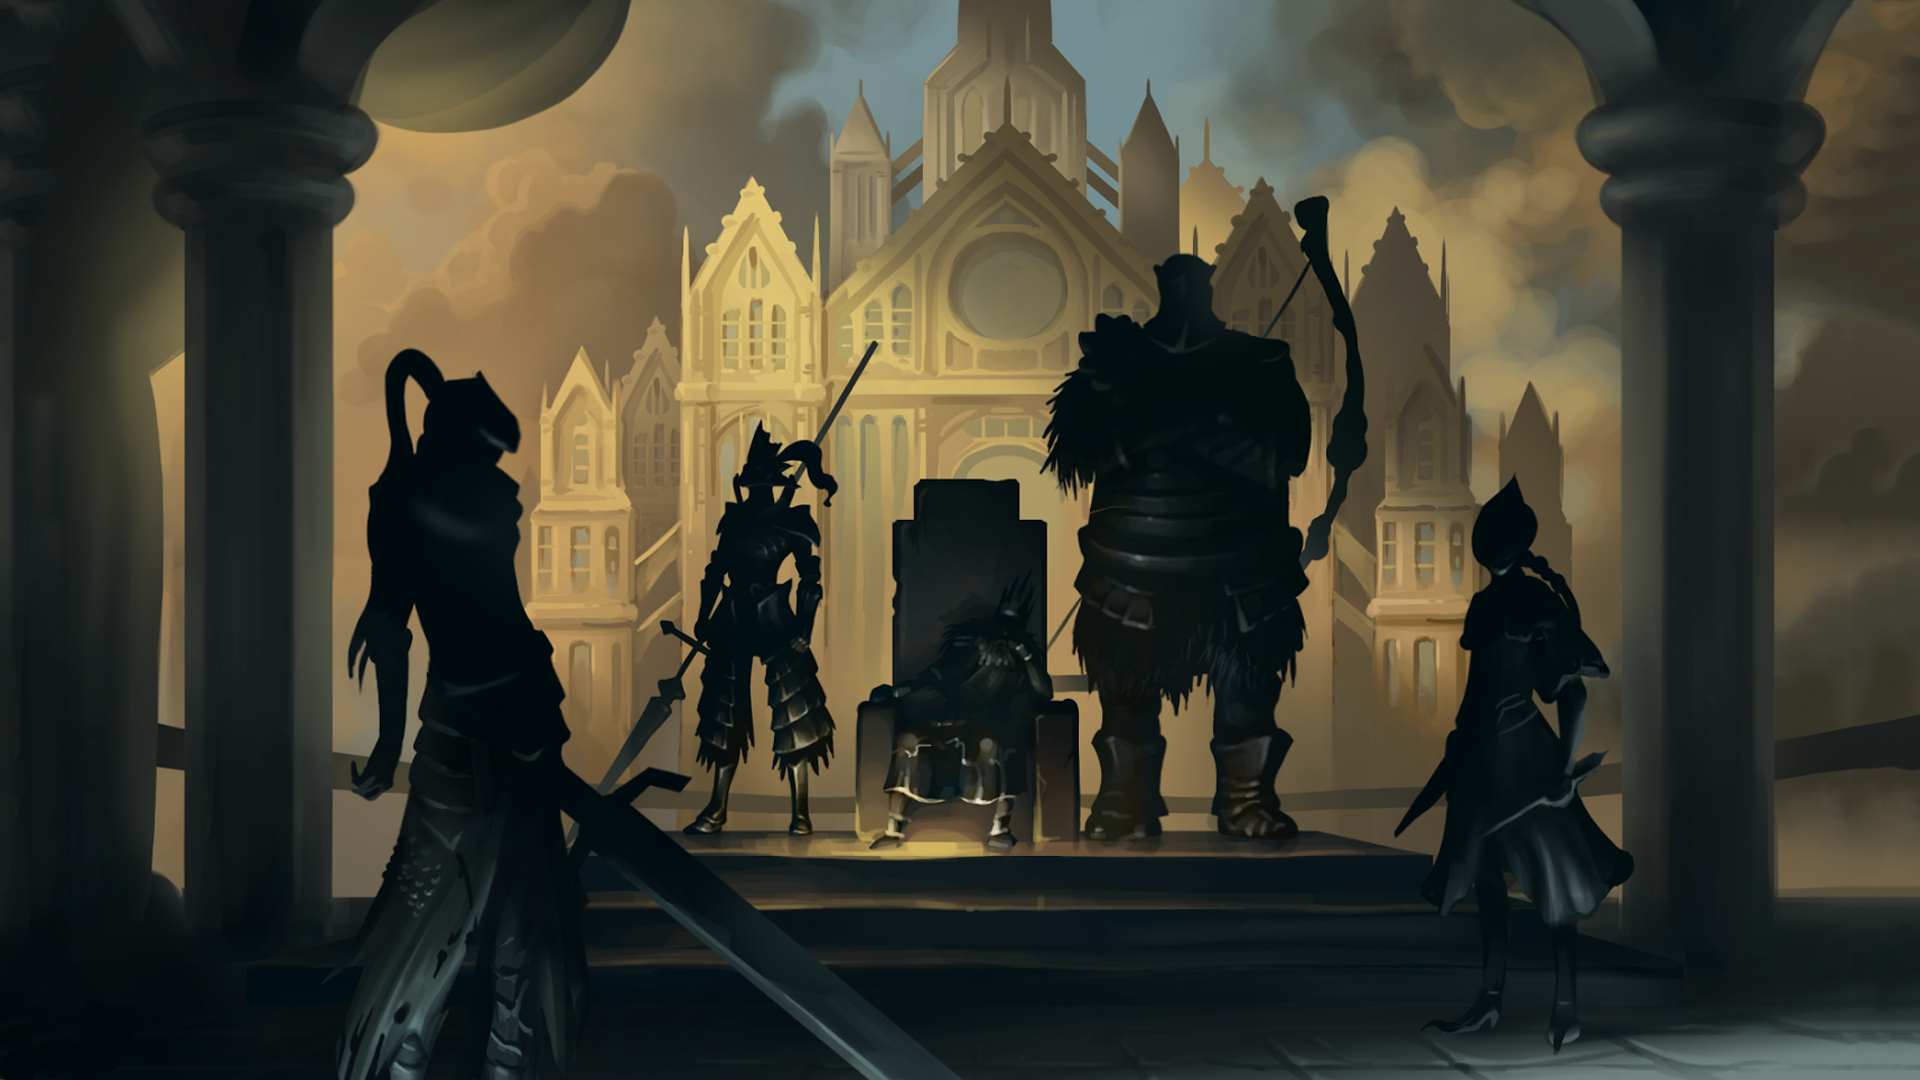 Dark Souls Artorias The Abysswalker Dragonslayer Ornstein Hawkeye Gough Lords Blade Ciaran Gwyn Lord 1920x1080